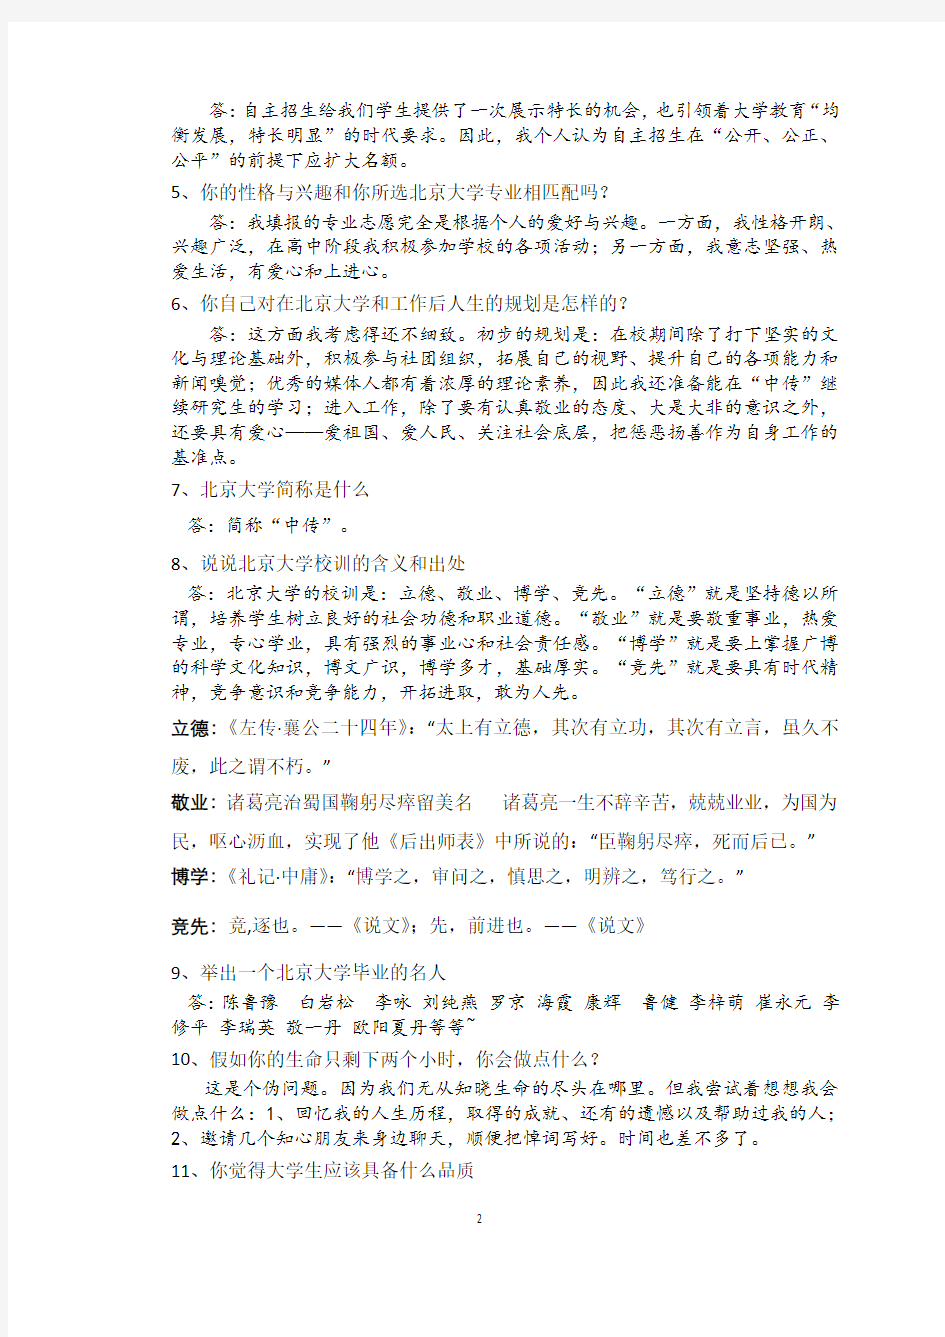 最新版北京大学综合素质测试面试题历年总结